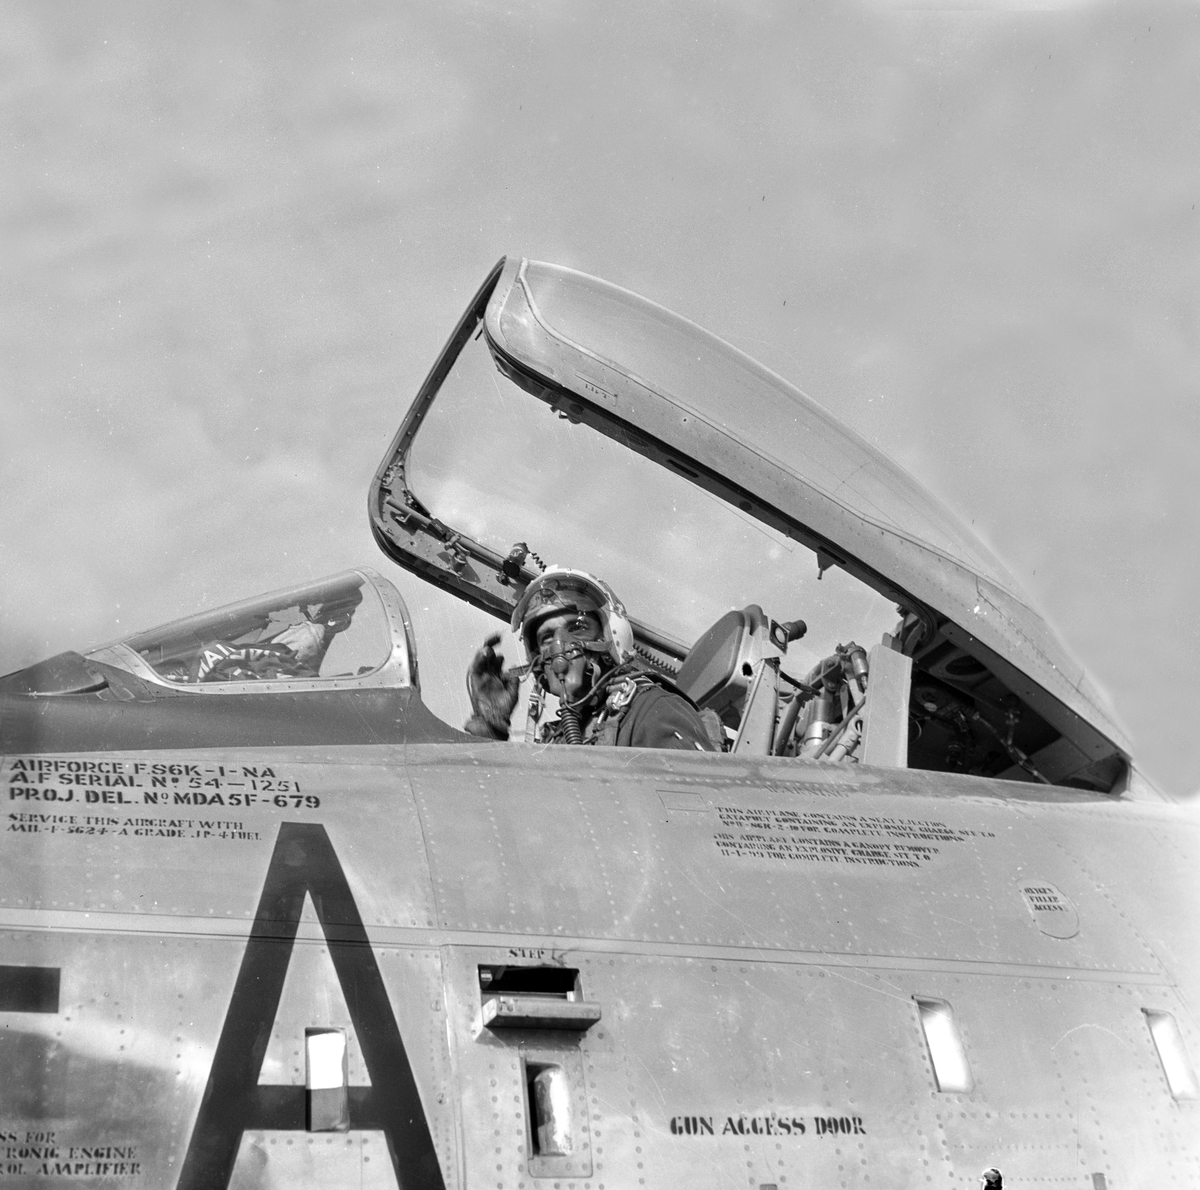 Serie. Mange uniformskledde personer er samlet i anledningen at et jagerfly skal bryte lydmuren. Jagerpiloten sitter i flyet. Fotografert 12. og 13. september 1955.